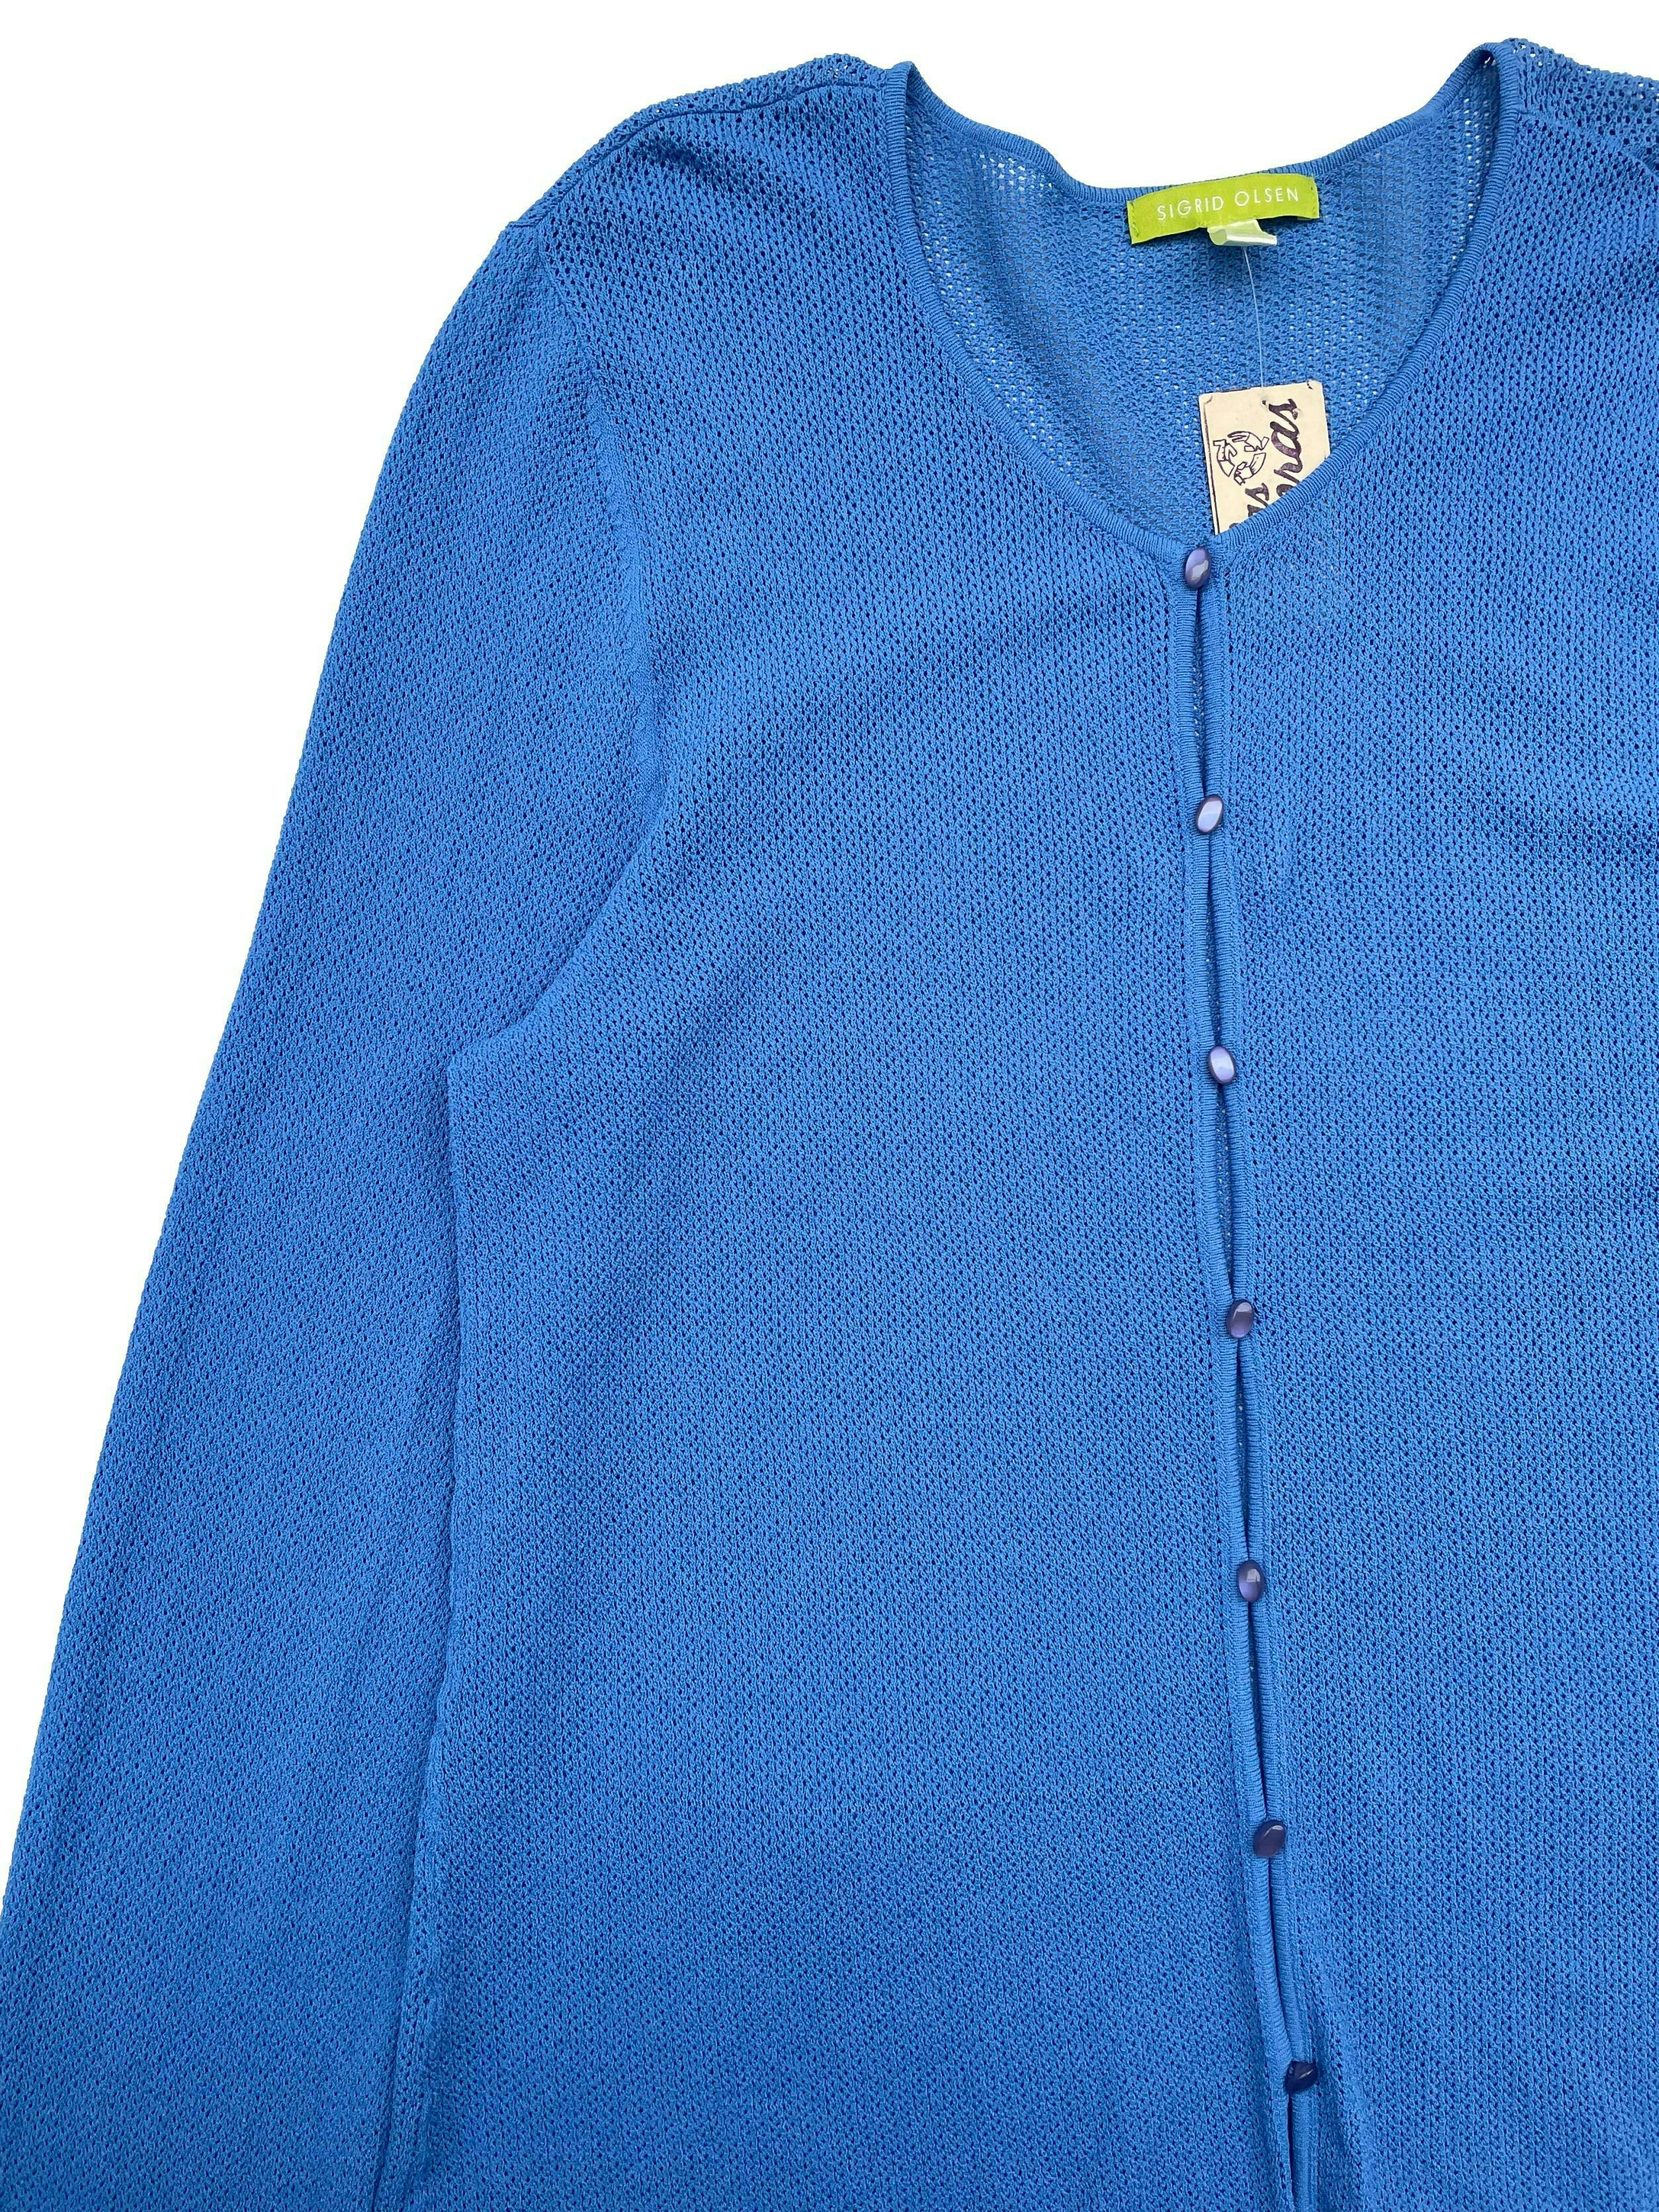 Cárdigan Sigrid Olsen color azul, tejido ligero con botones frontales .Busto 105cm, Largo 65cm.